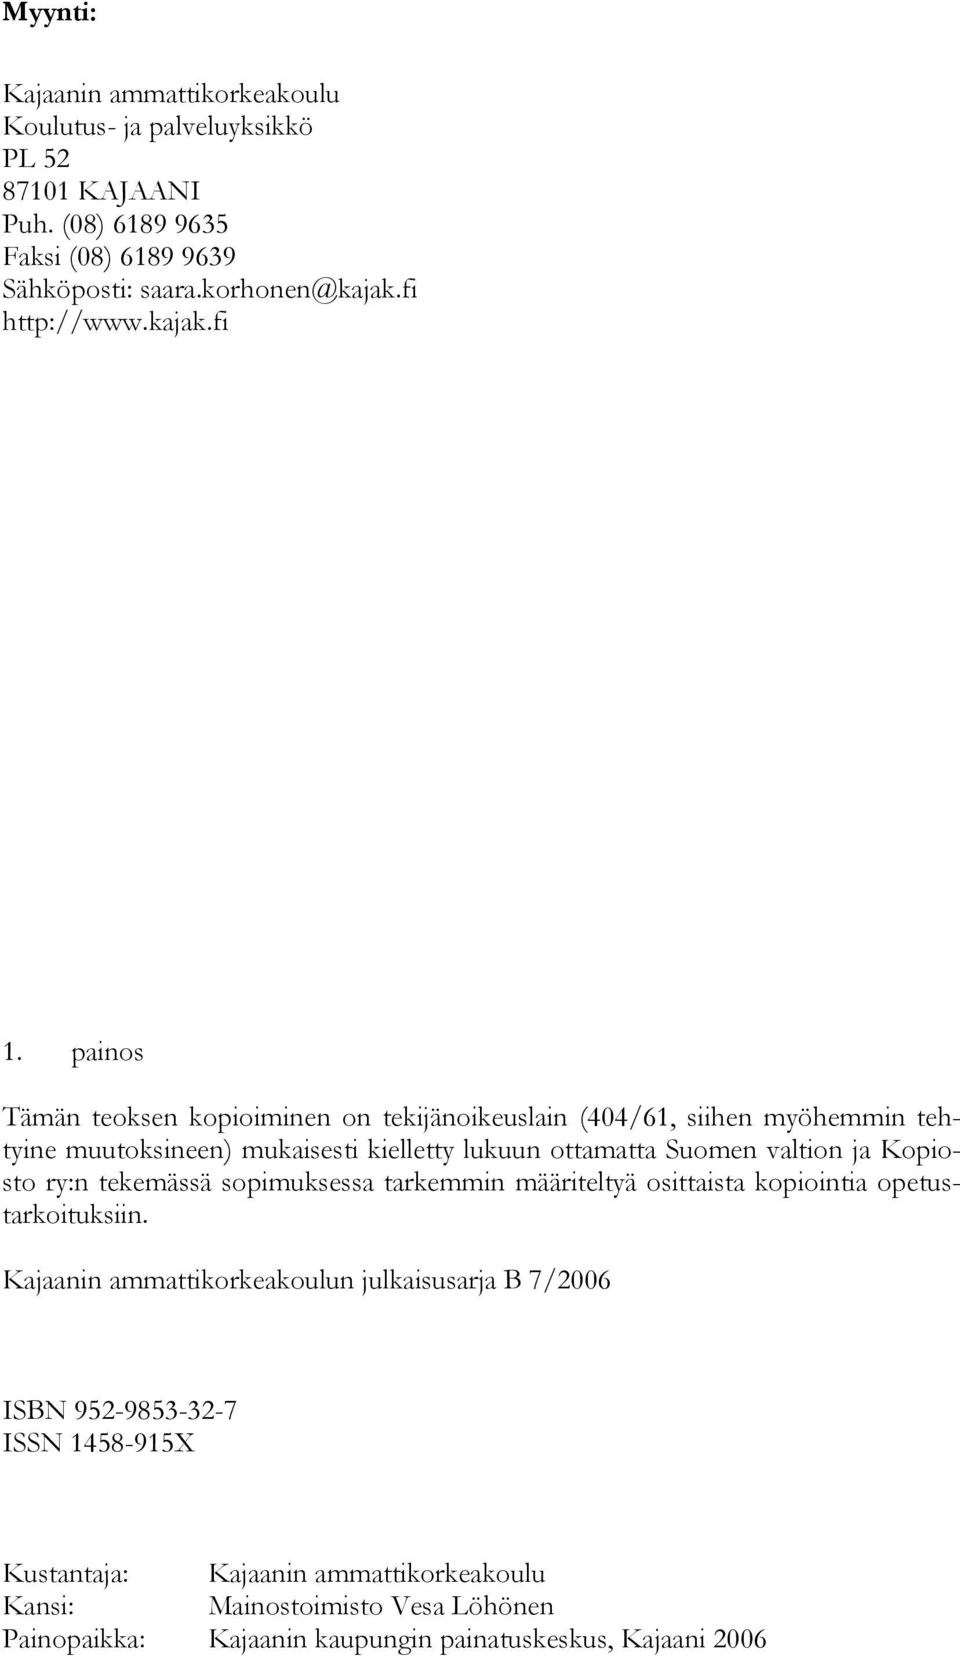 painos Tämän teoksen kopioiminen on tekijänoikeuslain (404/61, siihen myöhemmin tehtyine muutoksineen) mukaisesti kielletty lukuun ottamatta Suomen valtion ja